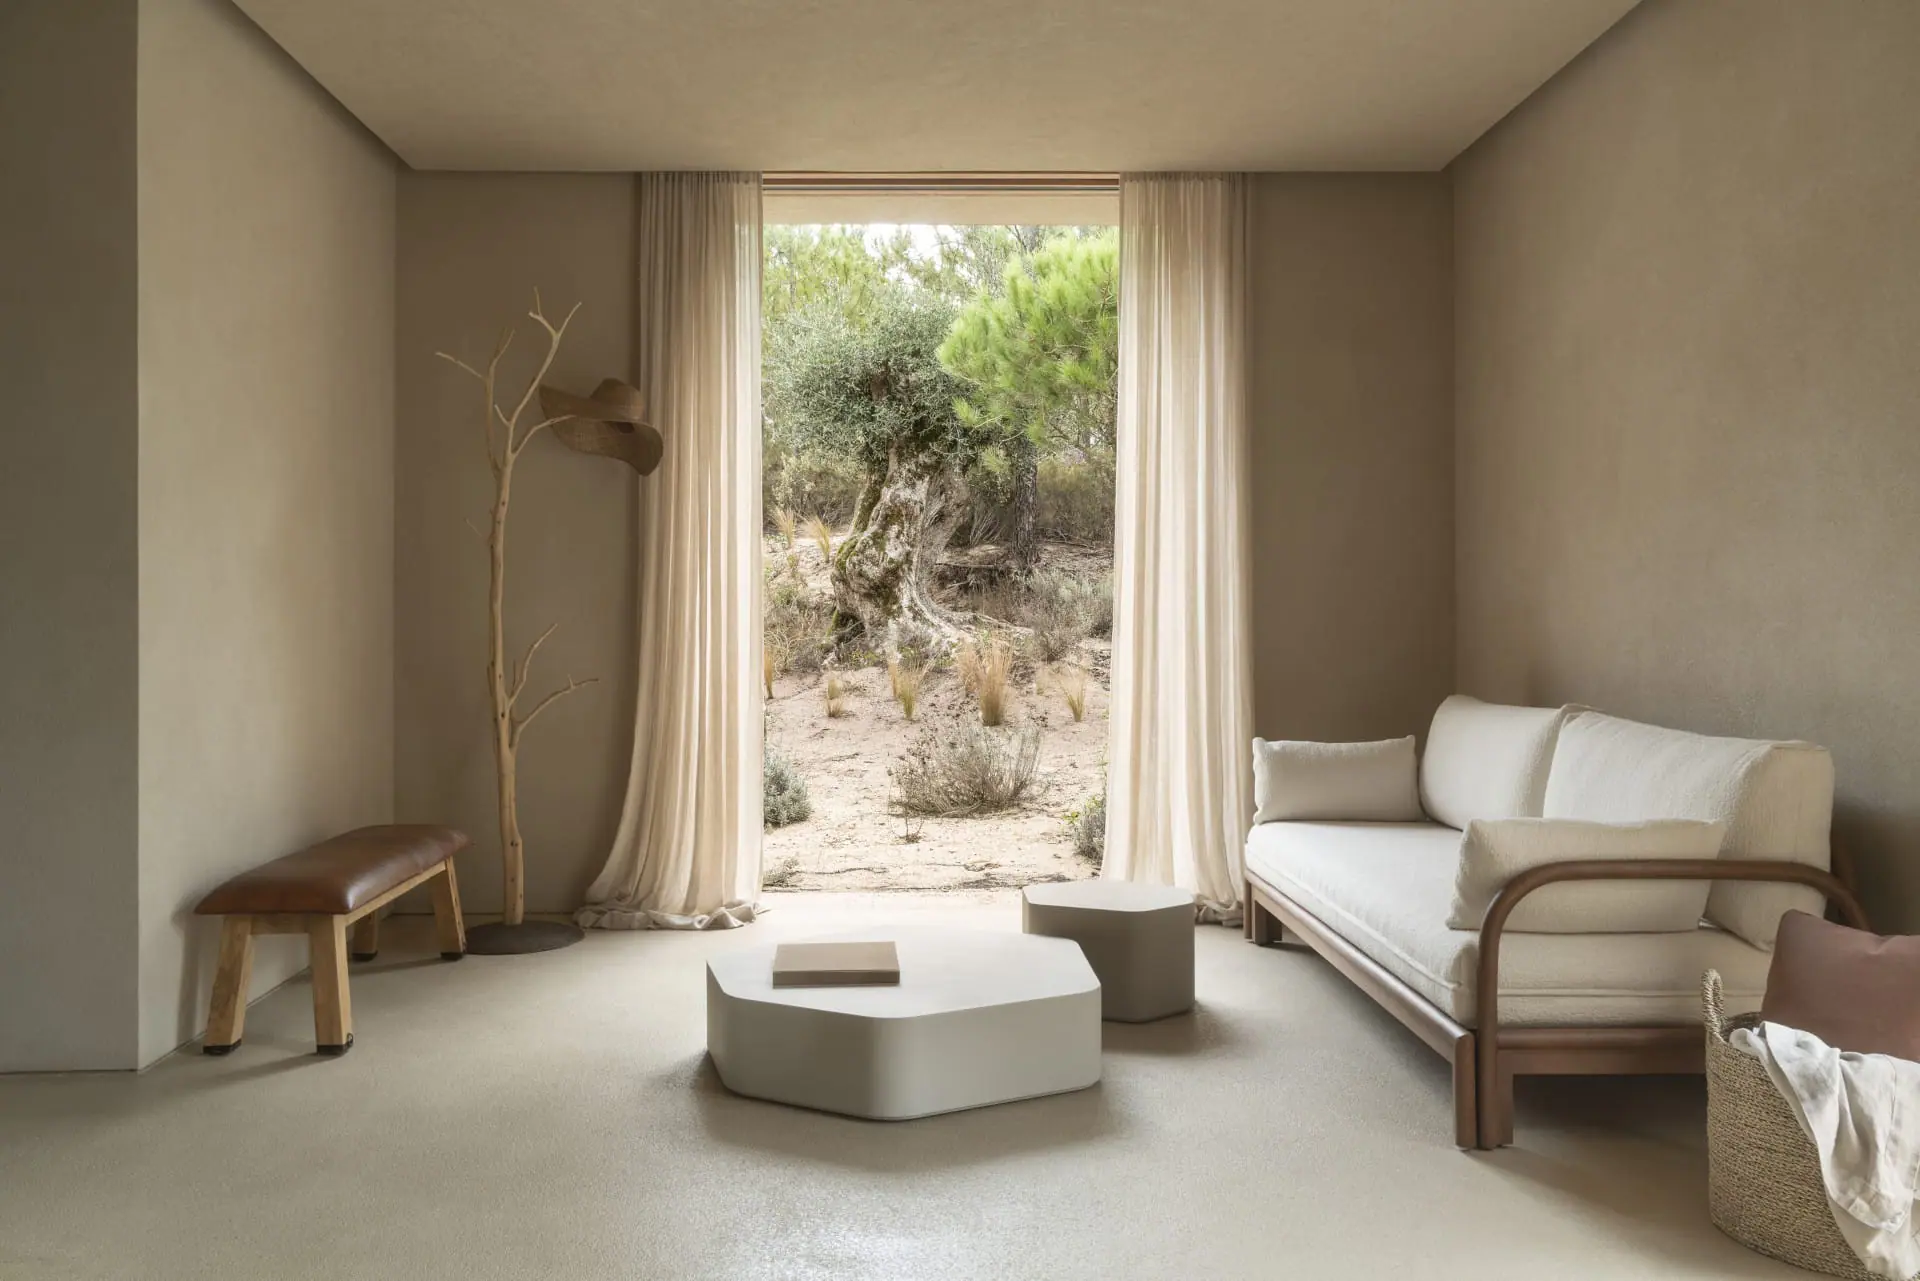 505-sofa-studio-expormim-handmade-furniture-indoor-03